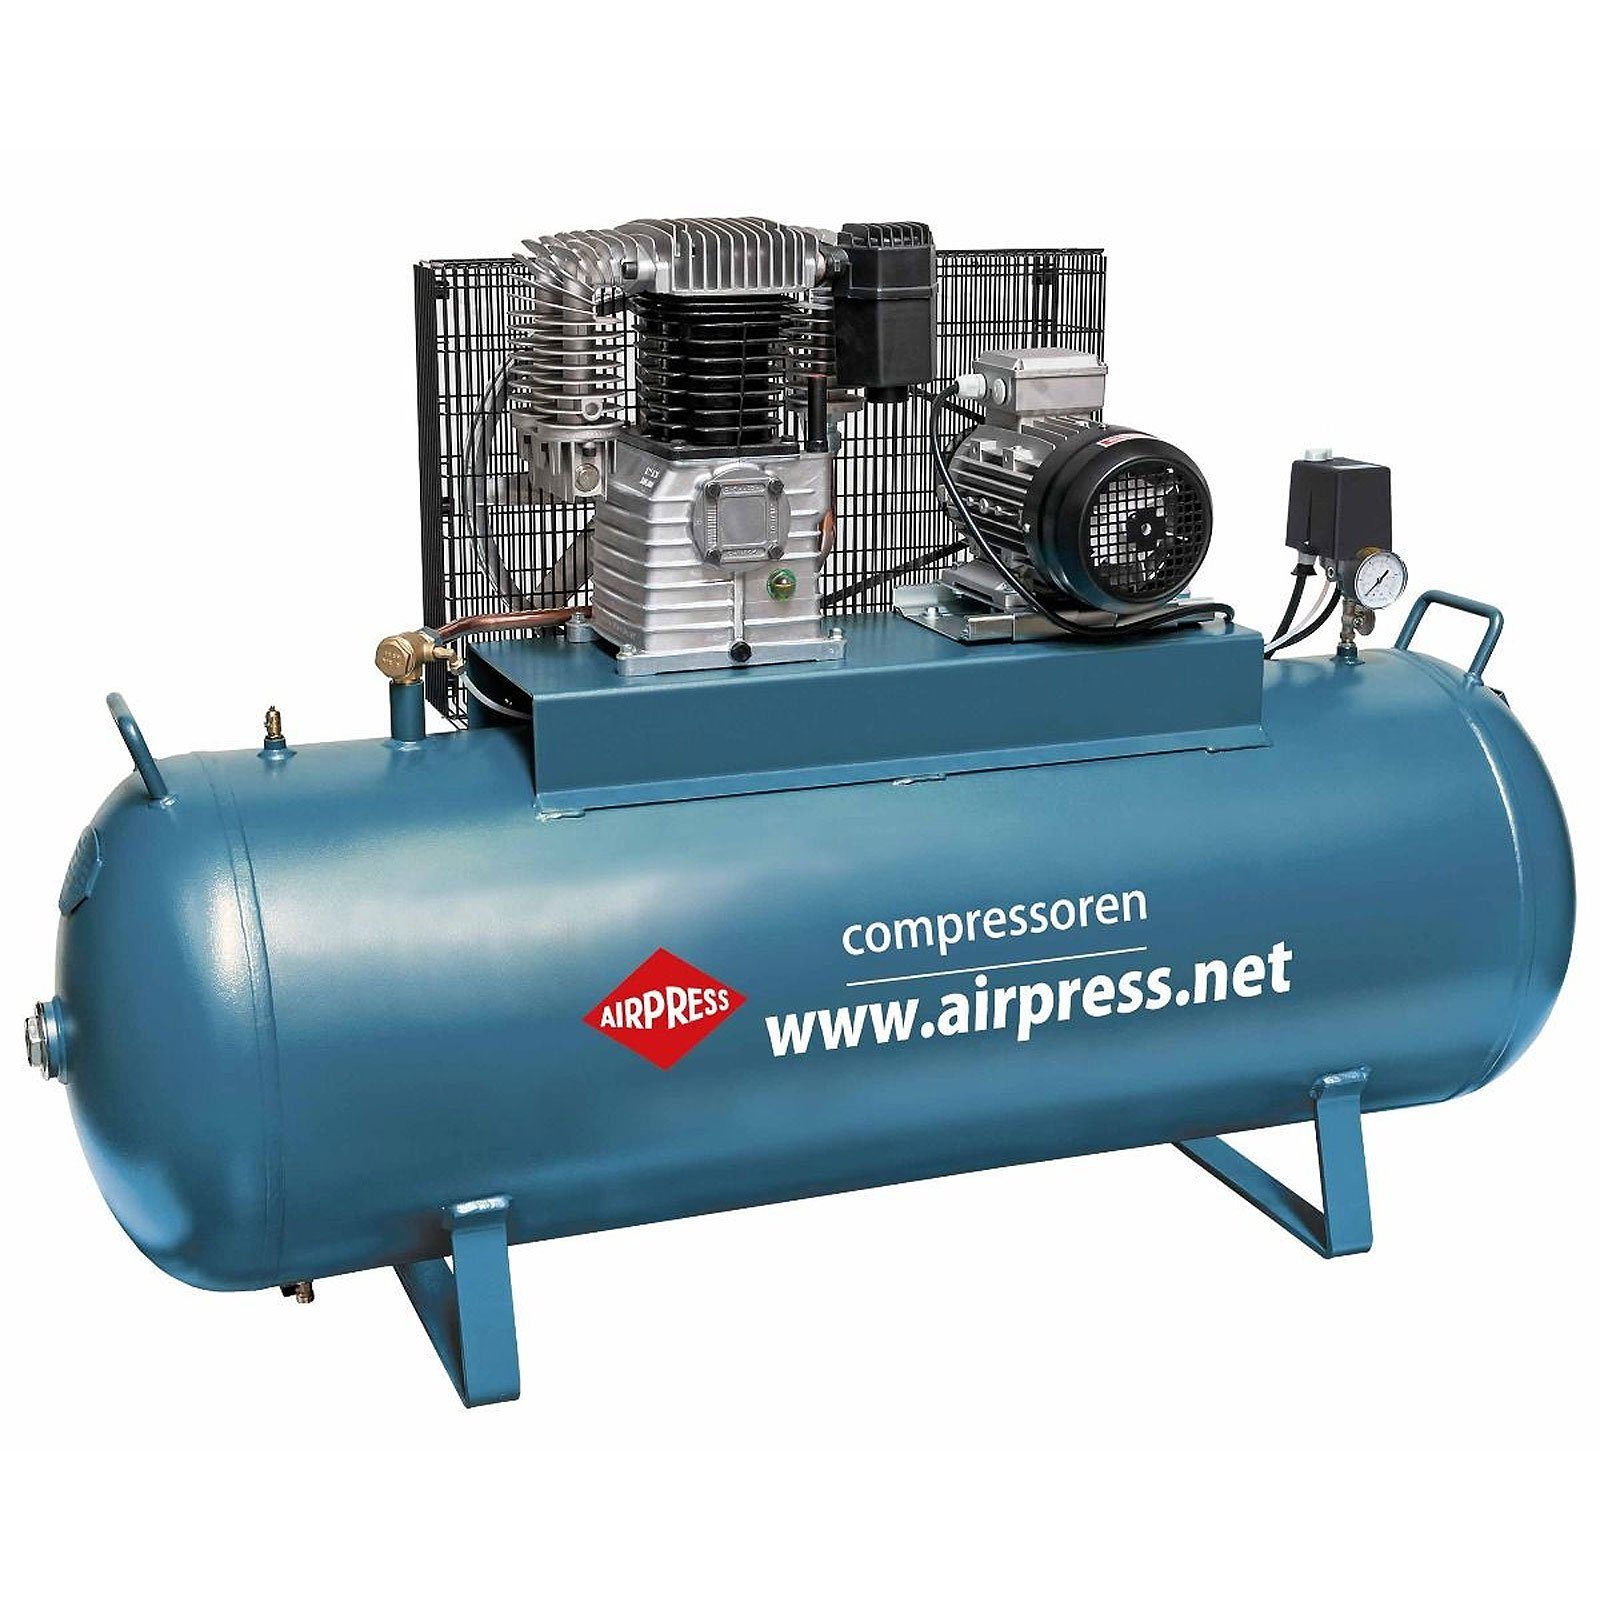 Airpress Kompressor Kompressor 4 PS 300 Liter 15 bar Typ K300-600 36524-N, max. 15 bar, 300 l